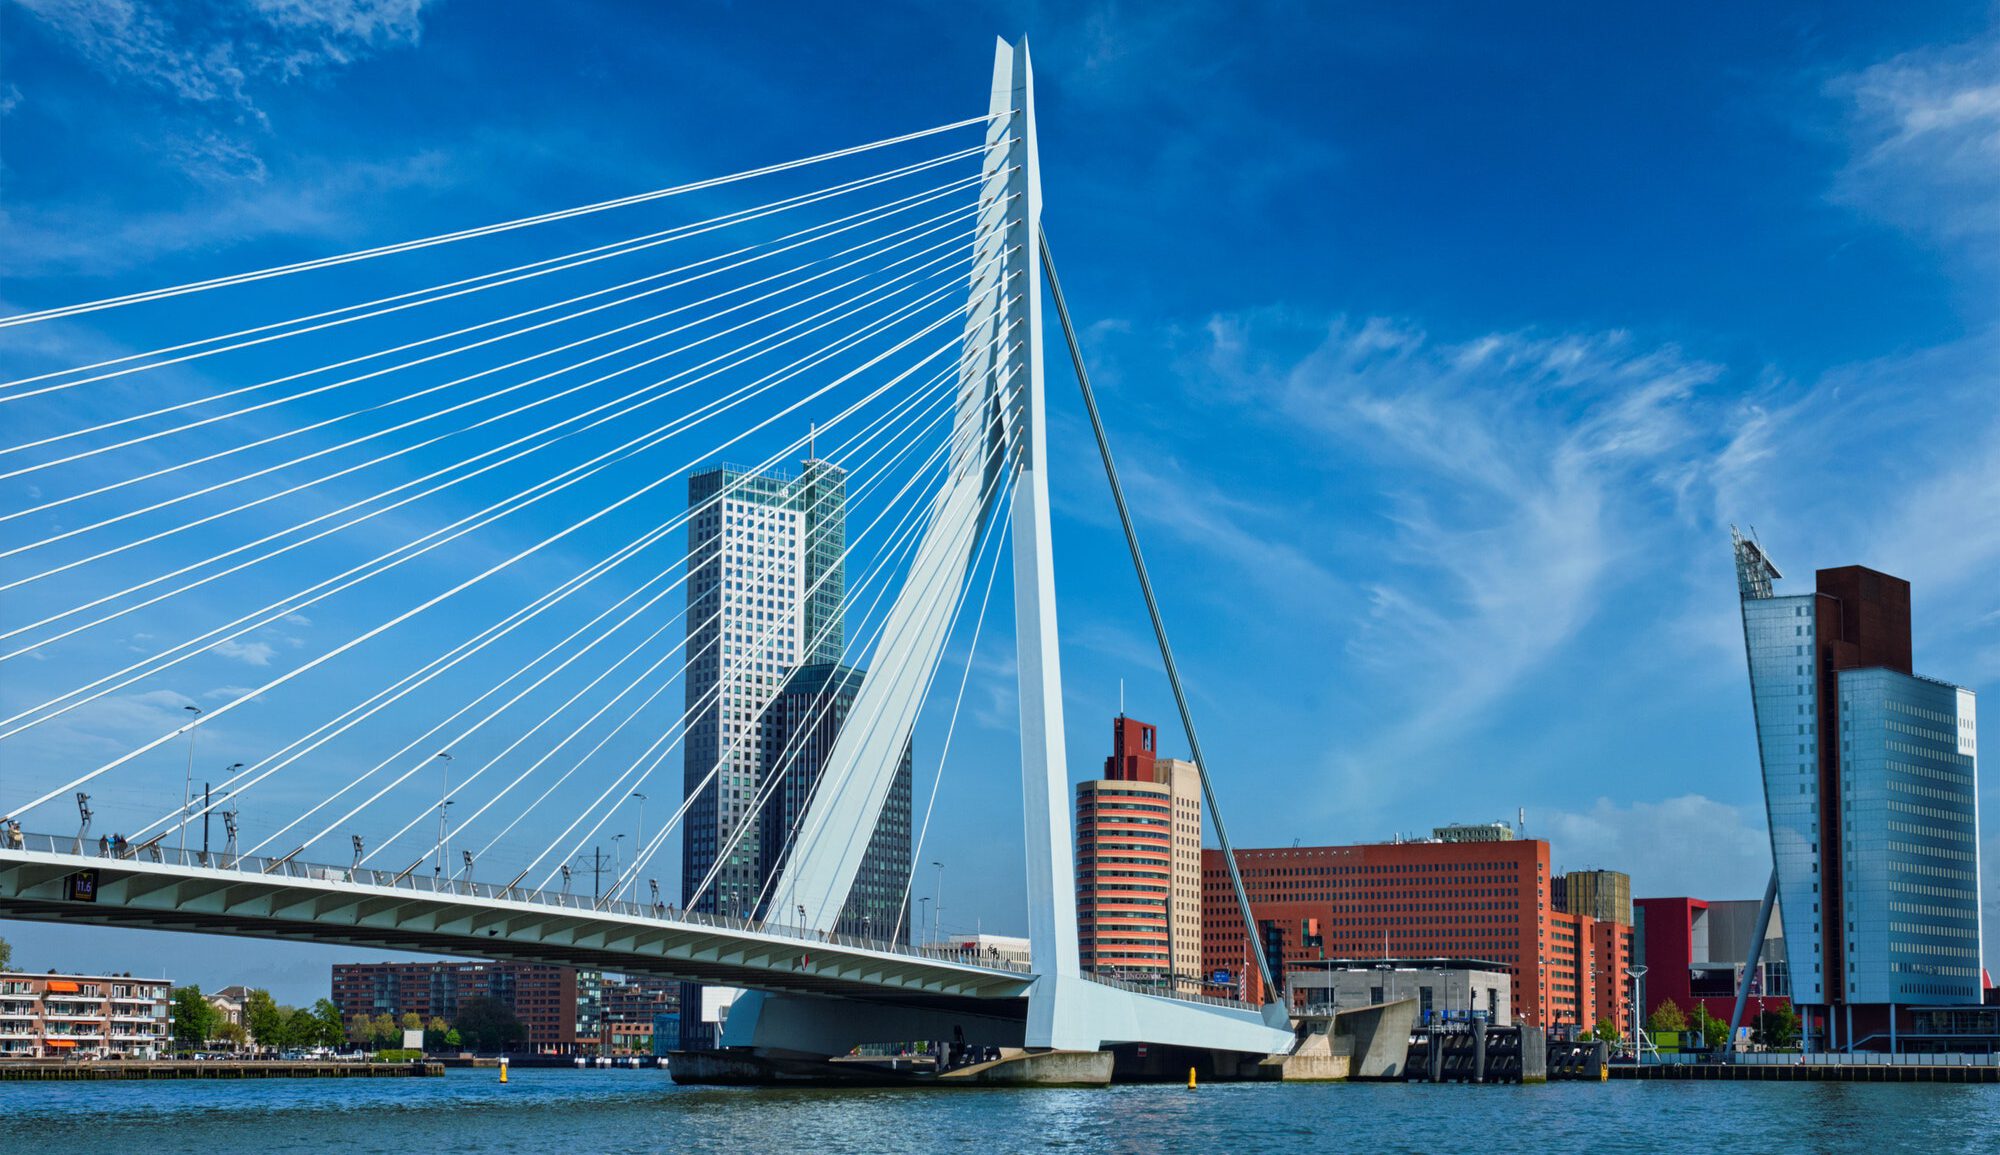 Stadtbild von Rotterdam, Niederlande